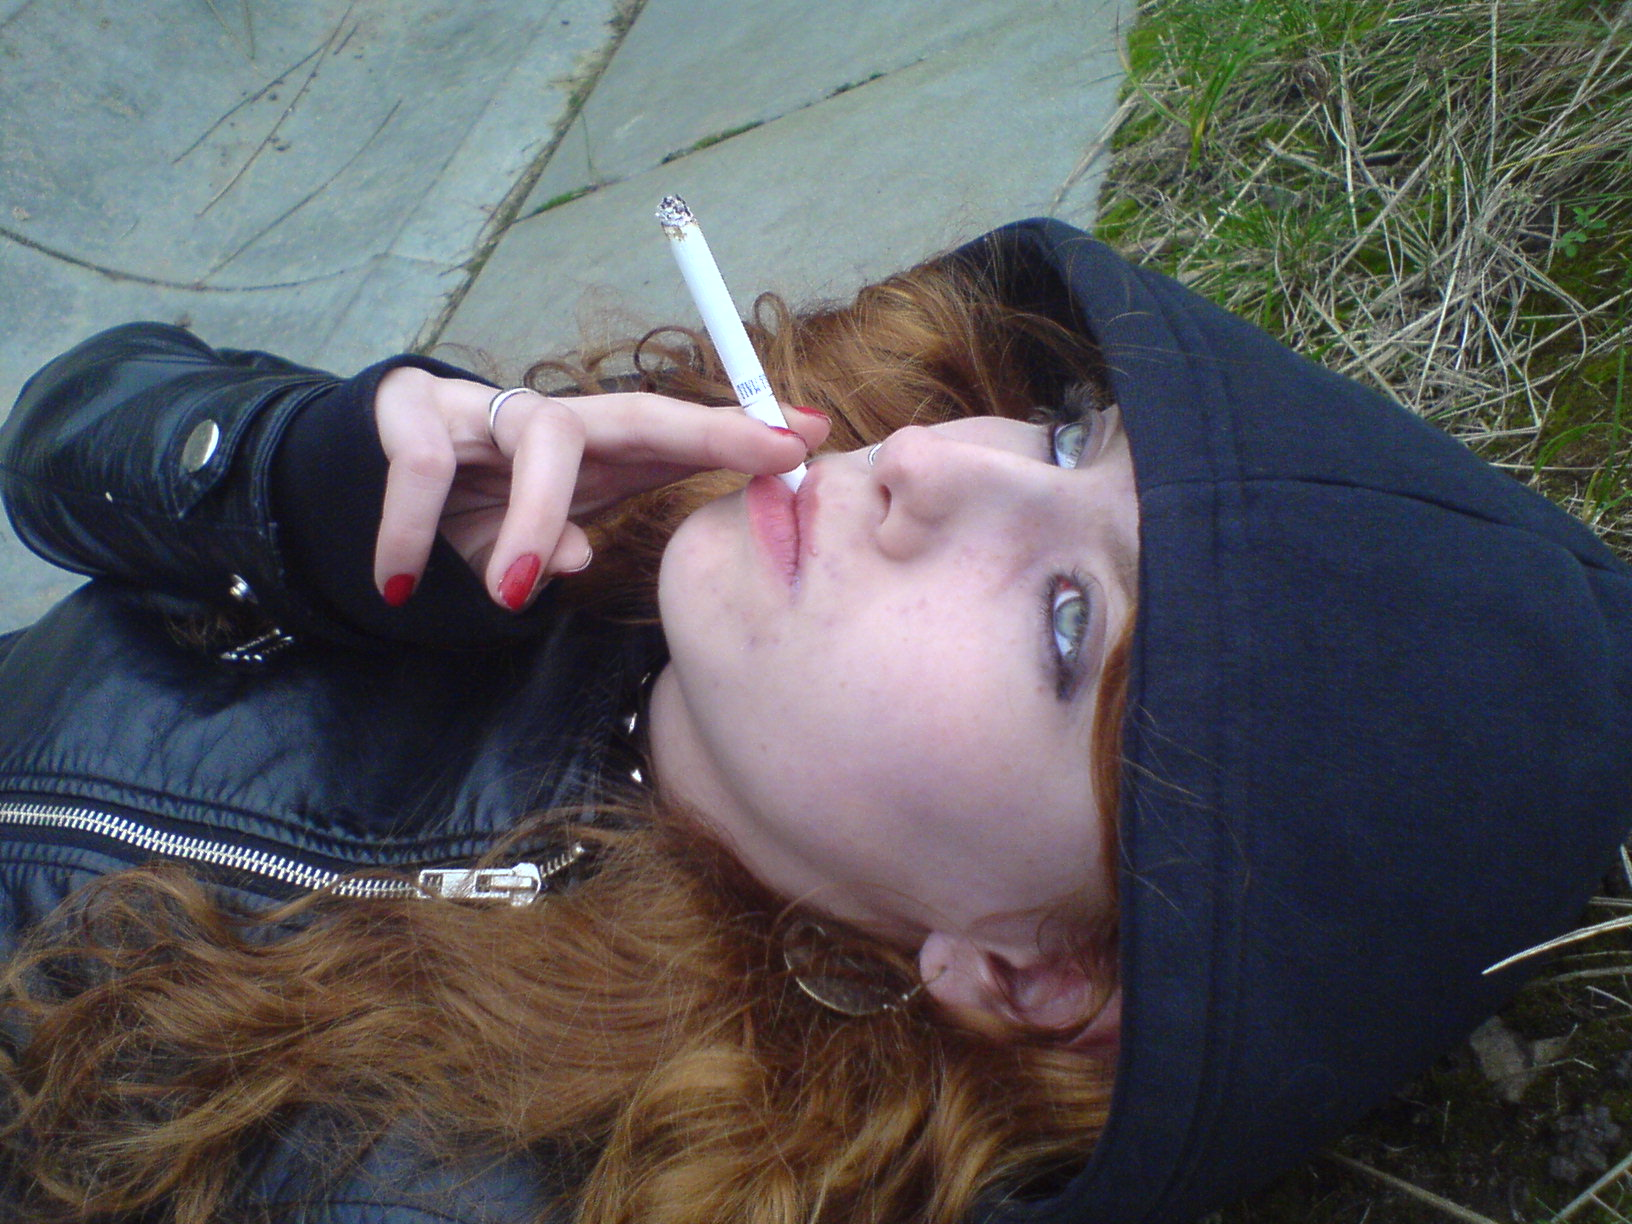 Liz vicious smoking